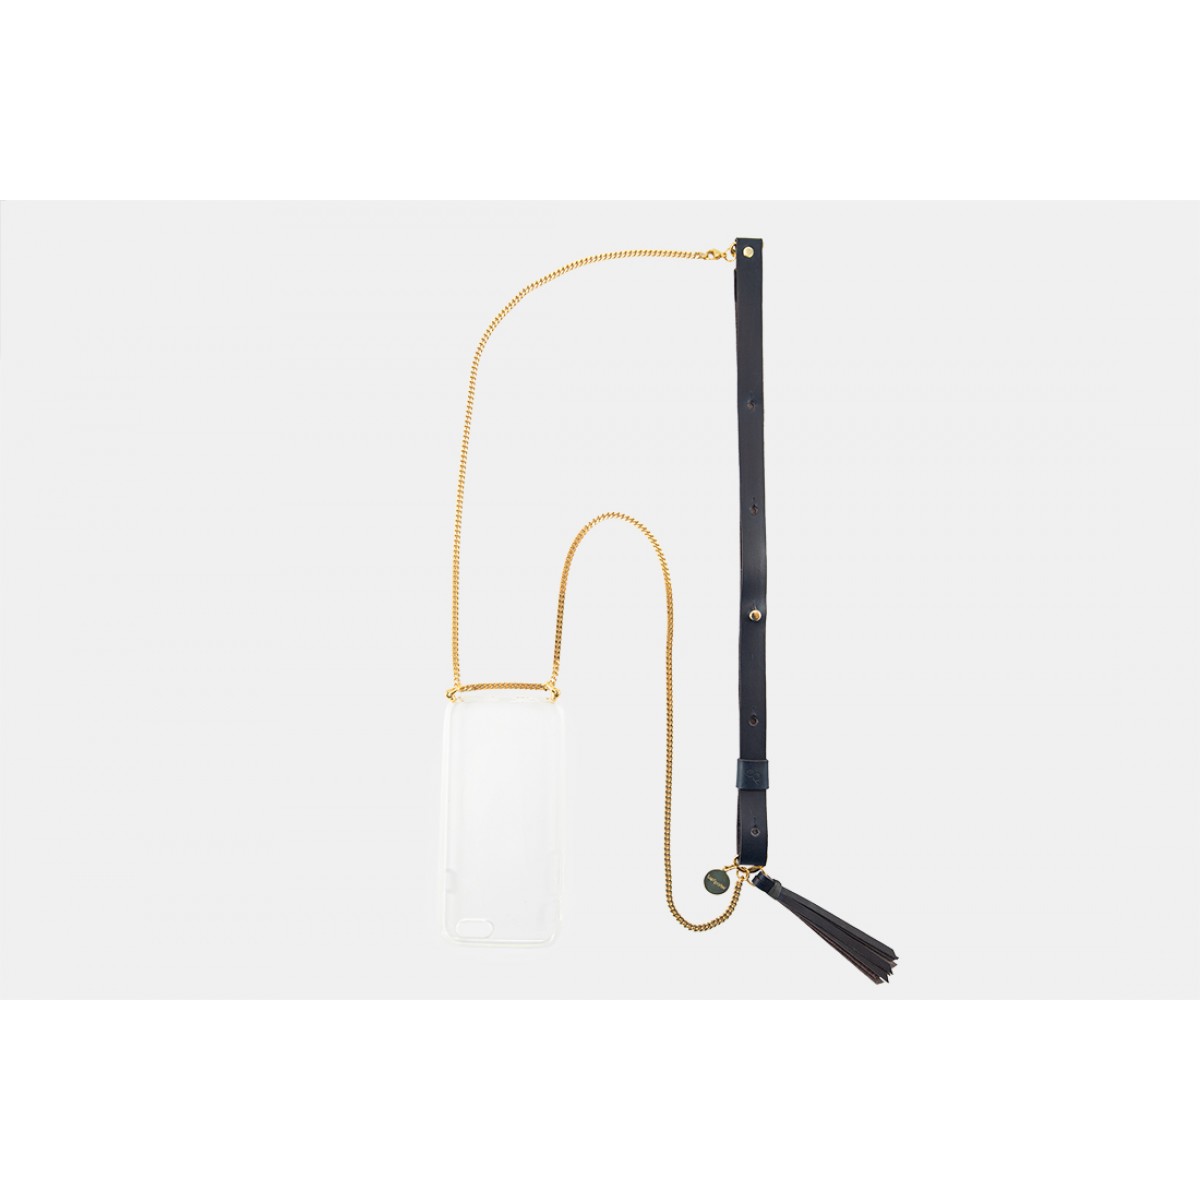 Lapàporter – iPhone Handykette aus Metall mit Lederriemen und abnehmbarer Tasche, dunkelblau/gold